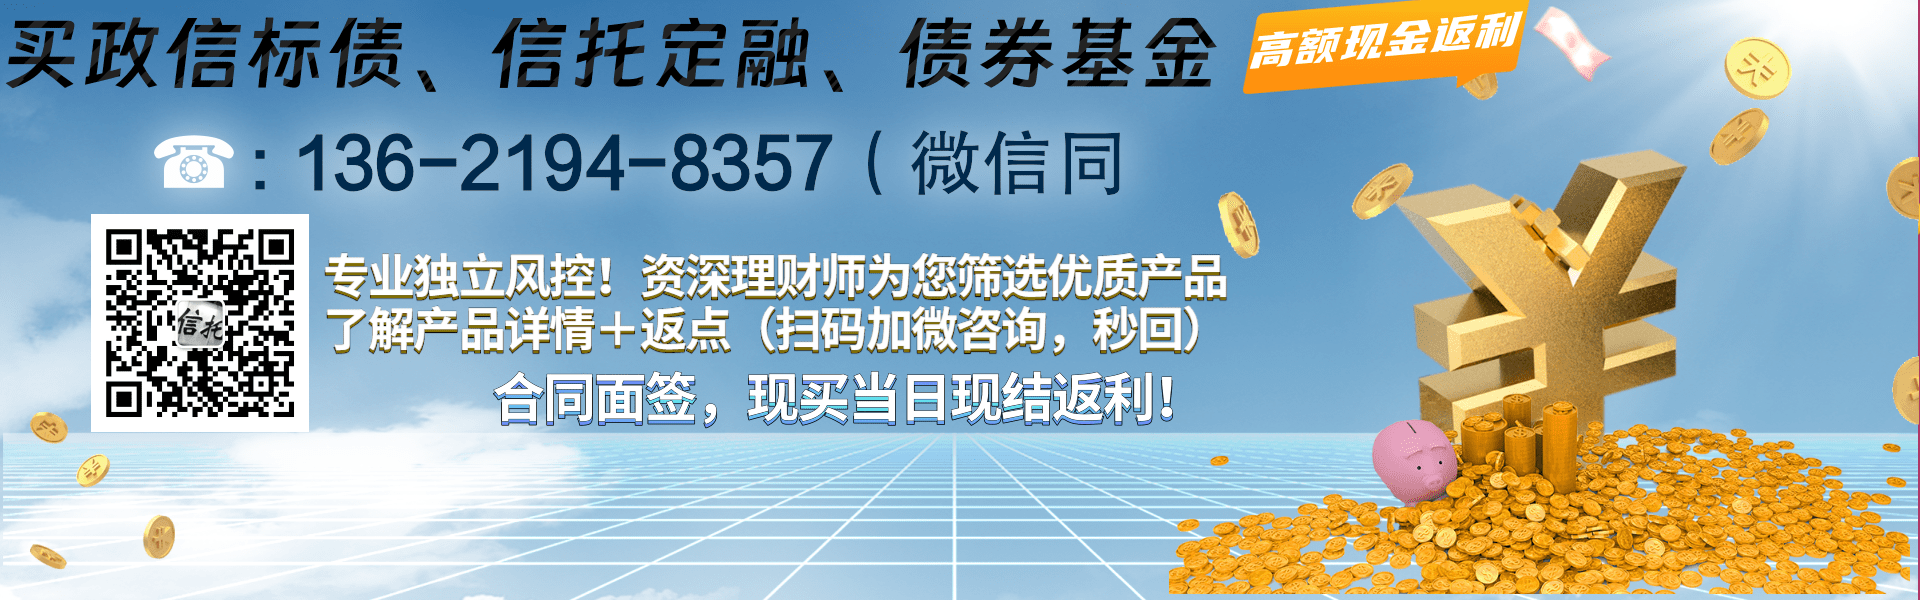 重庆九黎旅游控股债权资产项目城投债定融